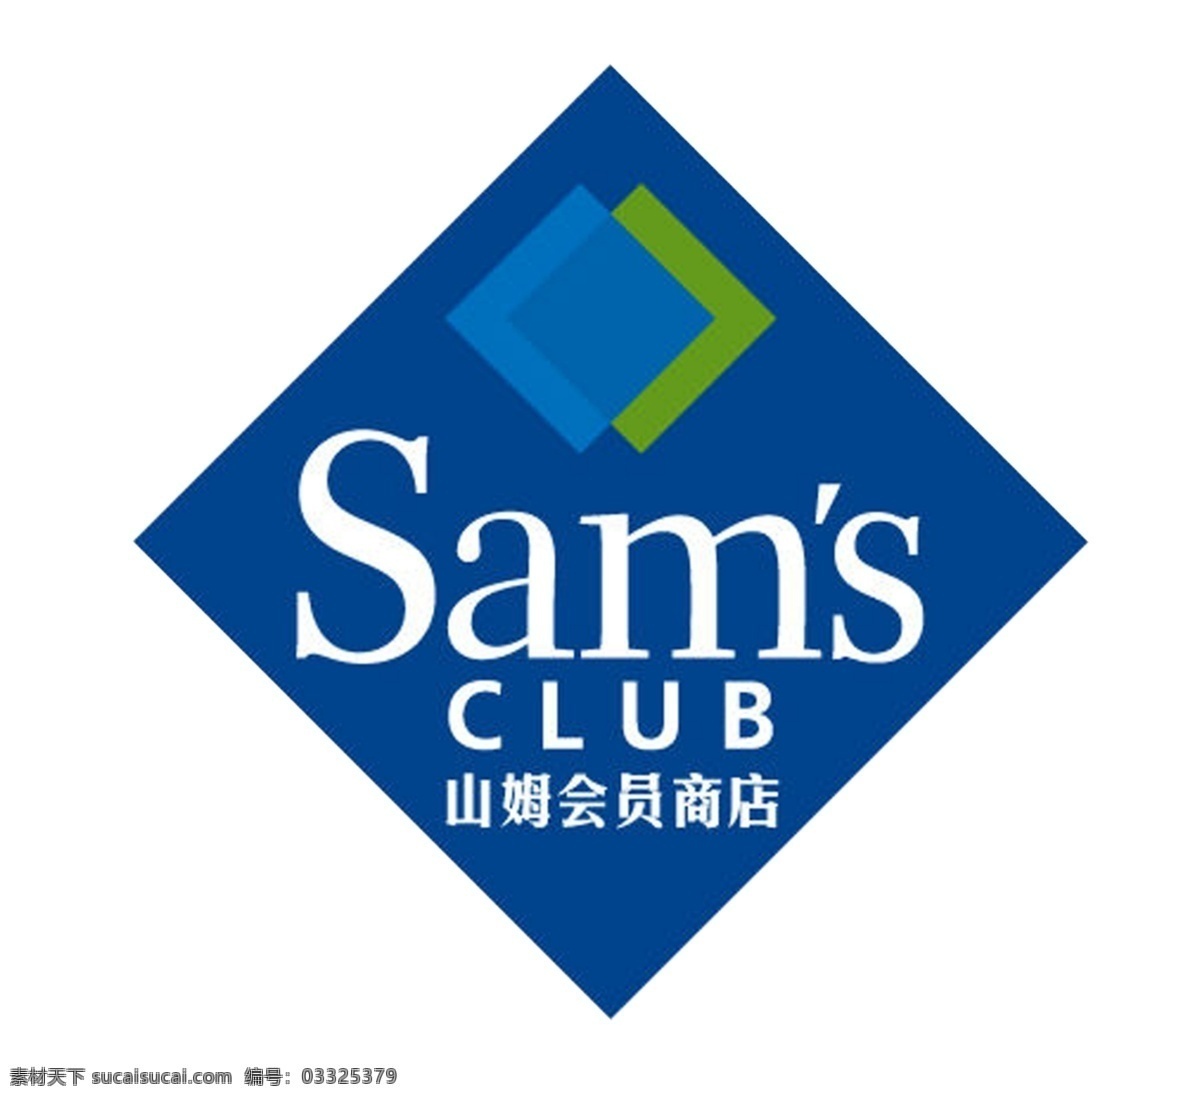 山姆 会员 店 logo 矢量图 活动 会员店 标志图标 企业 标志